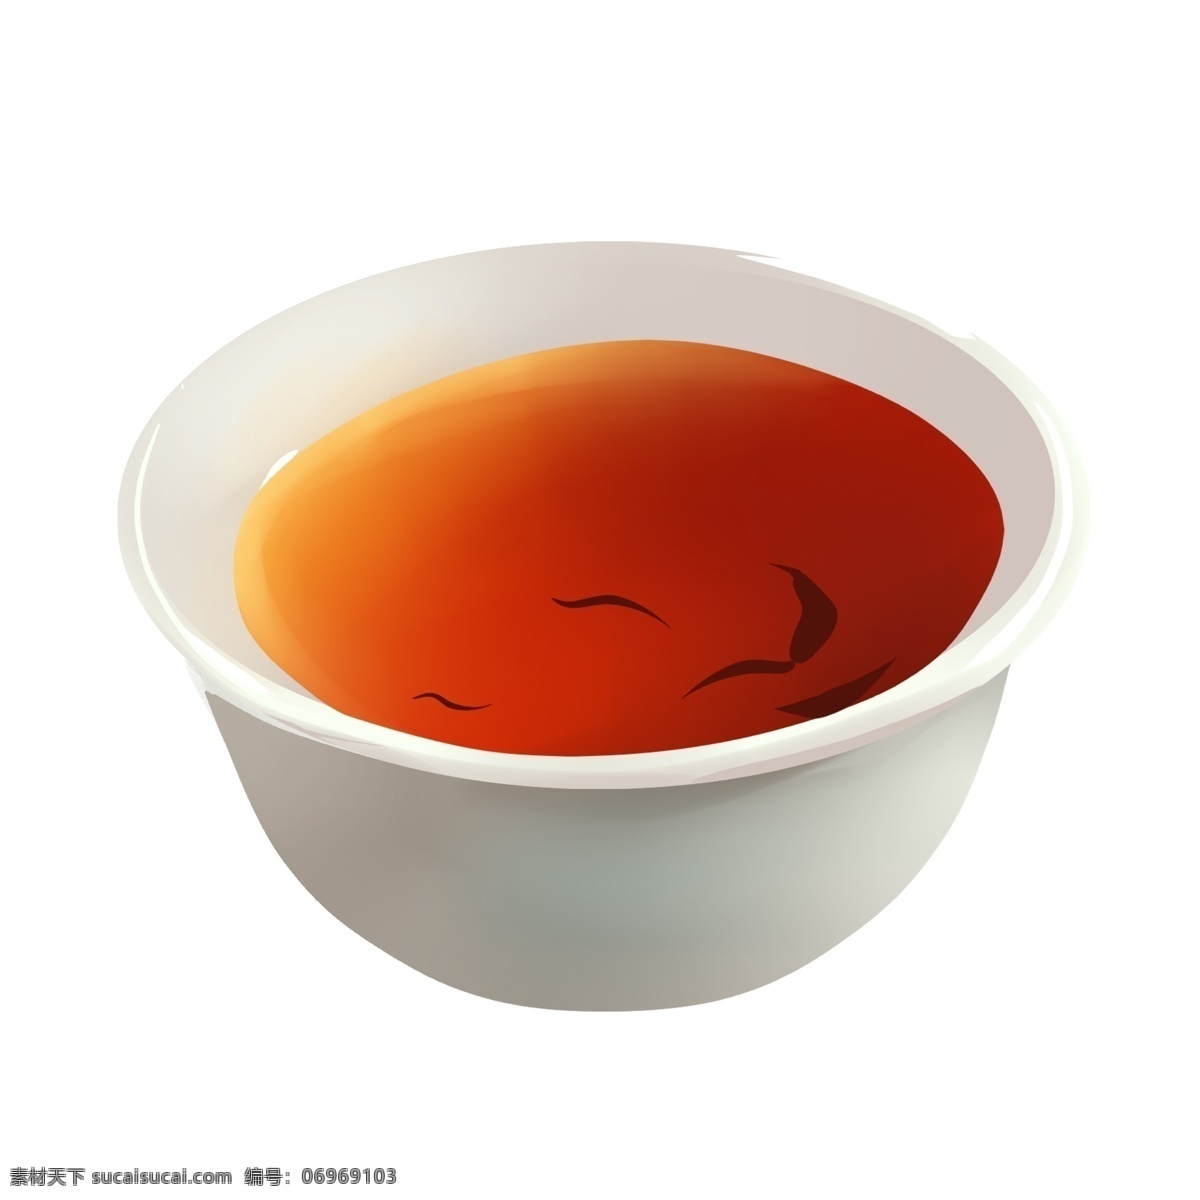 一杯 香 浓 茶水 插画 煮茶 一杯茶水 香浓茶水 白色茶杯 茶 茶水插图 热茶水